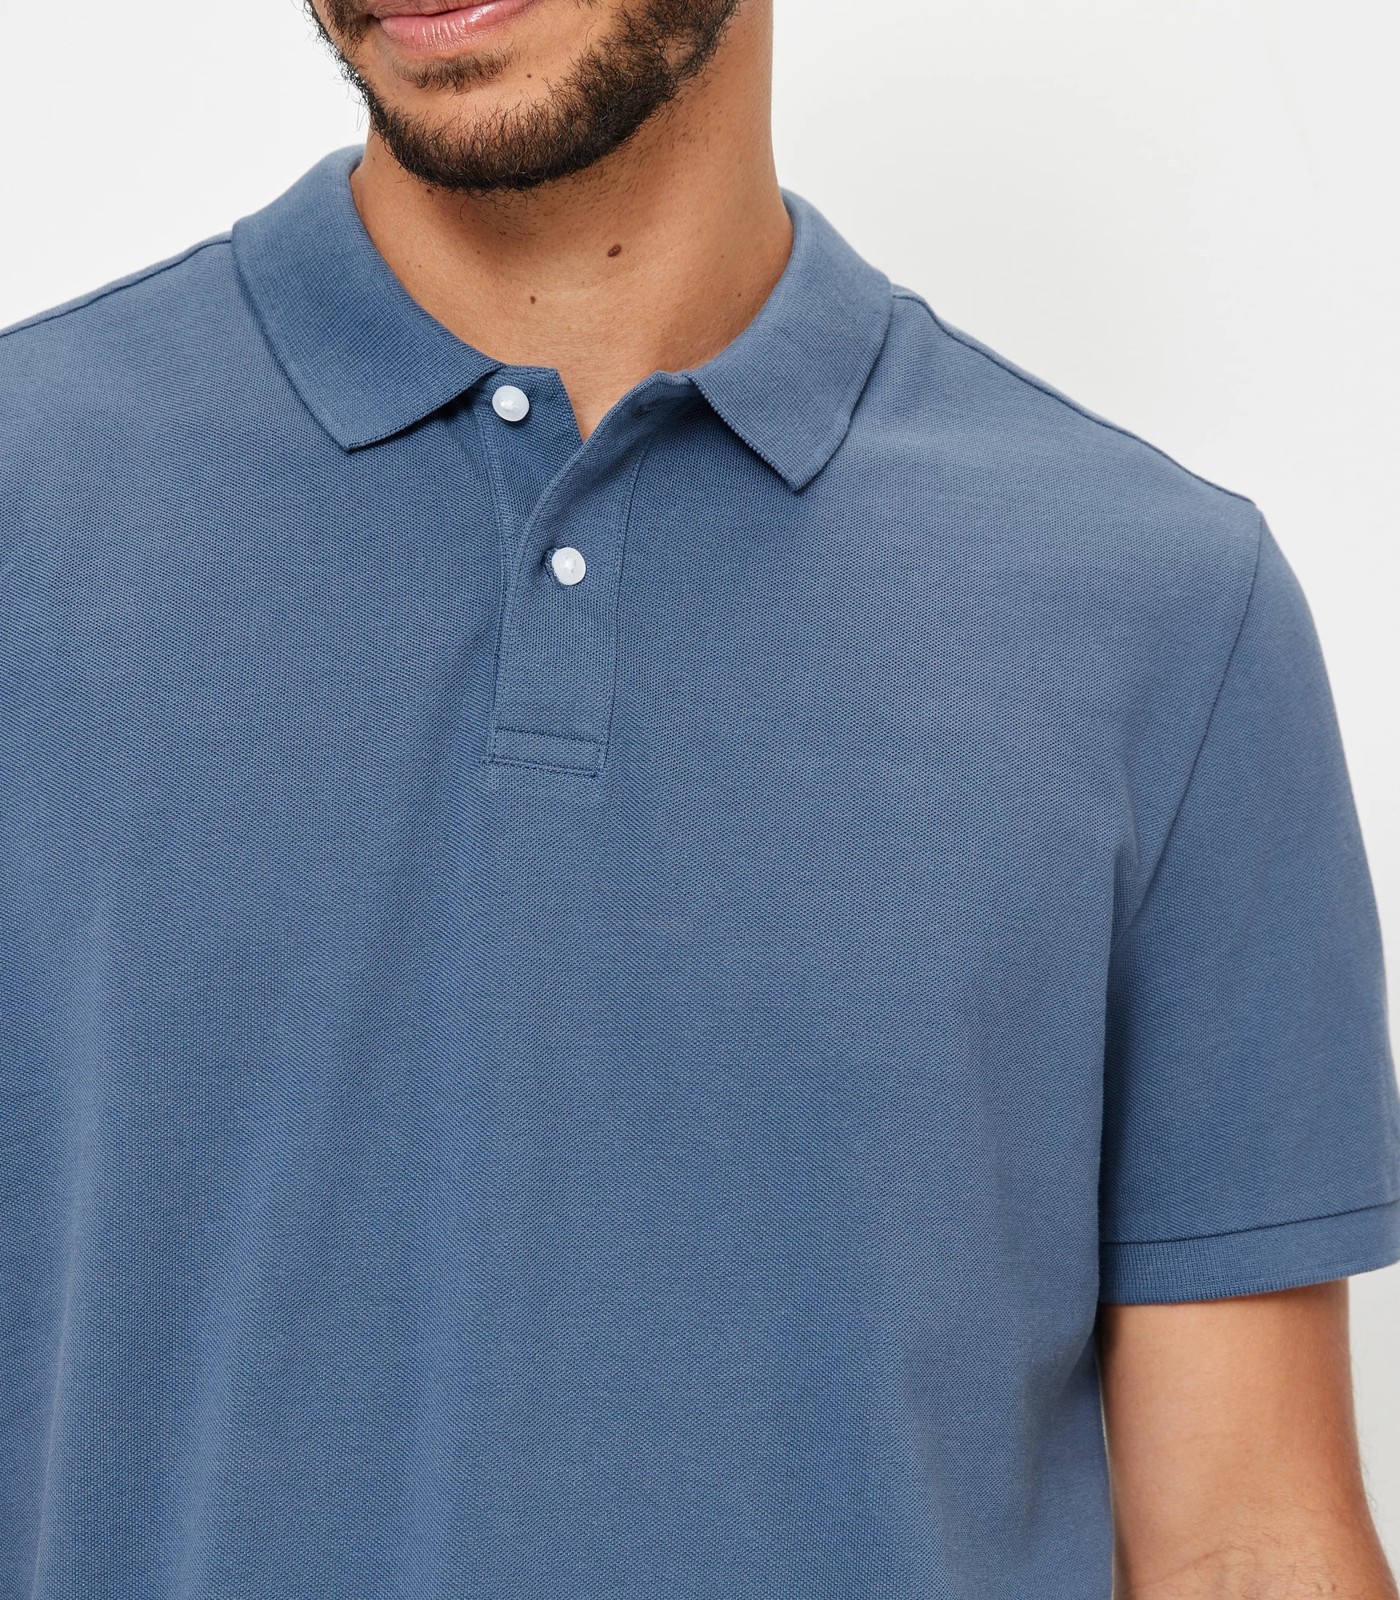 Pique Polo Shirt - Indigo | Target Australia